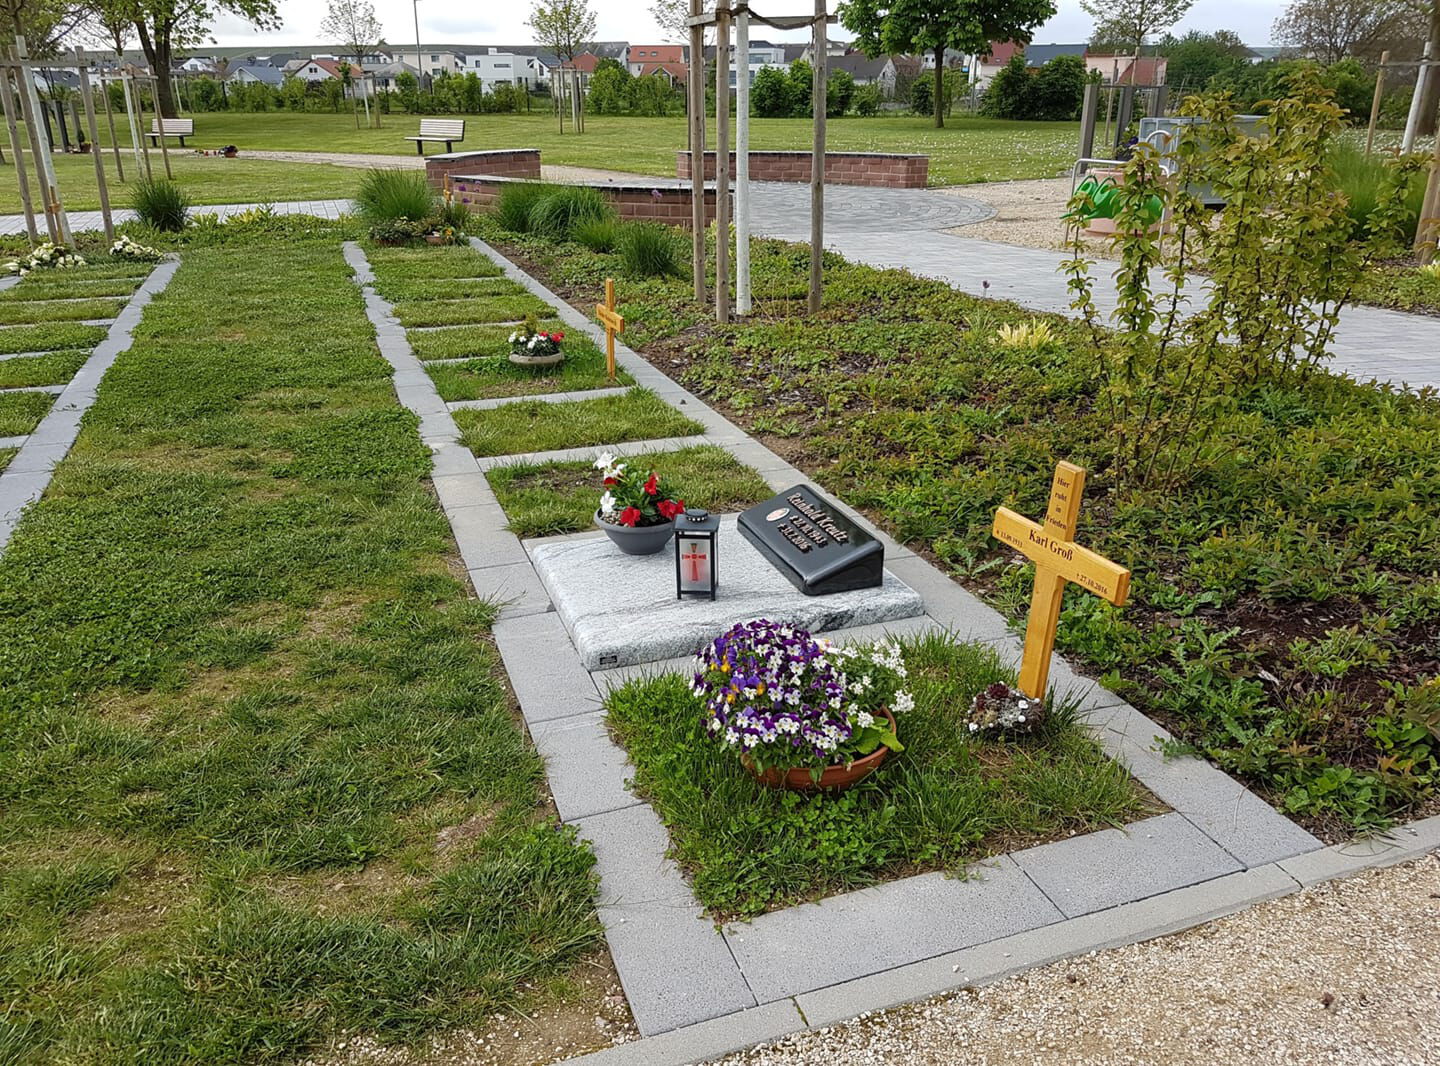 Friedhofsgräber mit Gras bewachsen, Blumen und Bäume